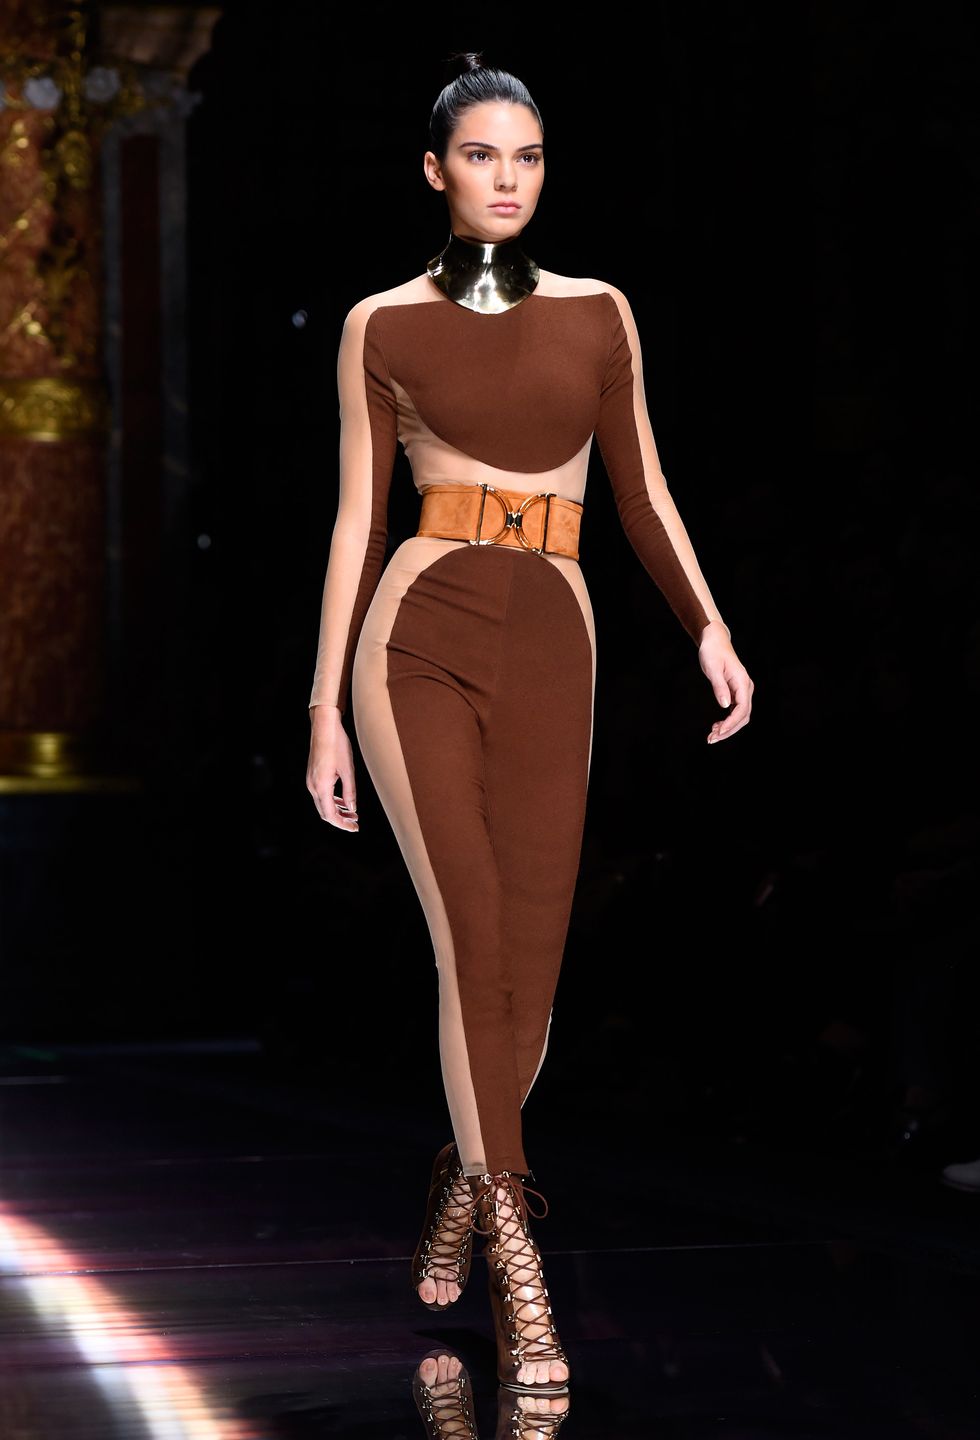 Kendall Jenner walking for Balmain at Paris Fashion Week